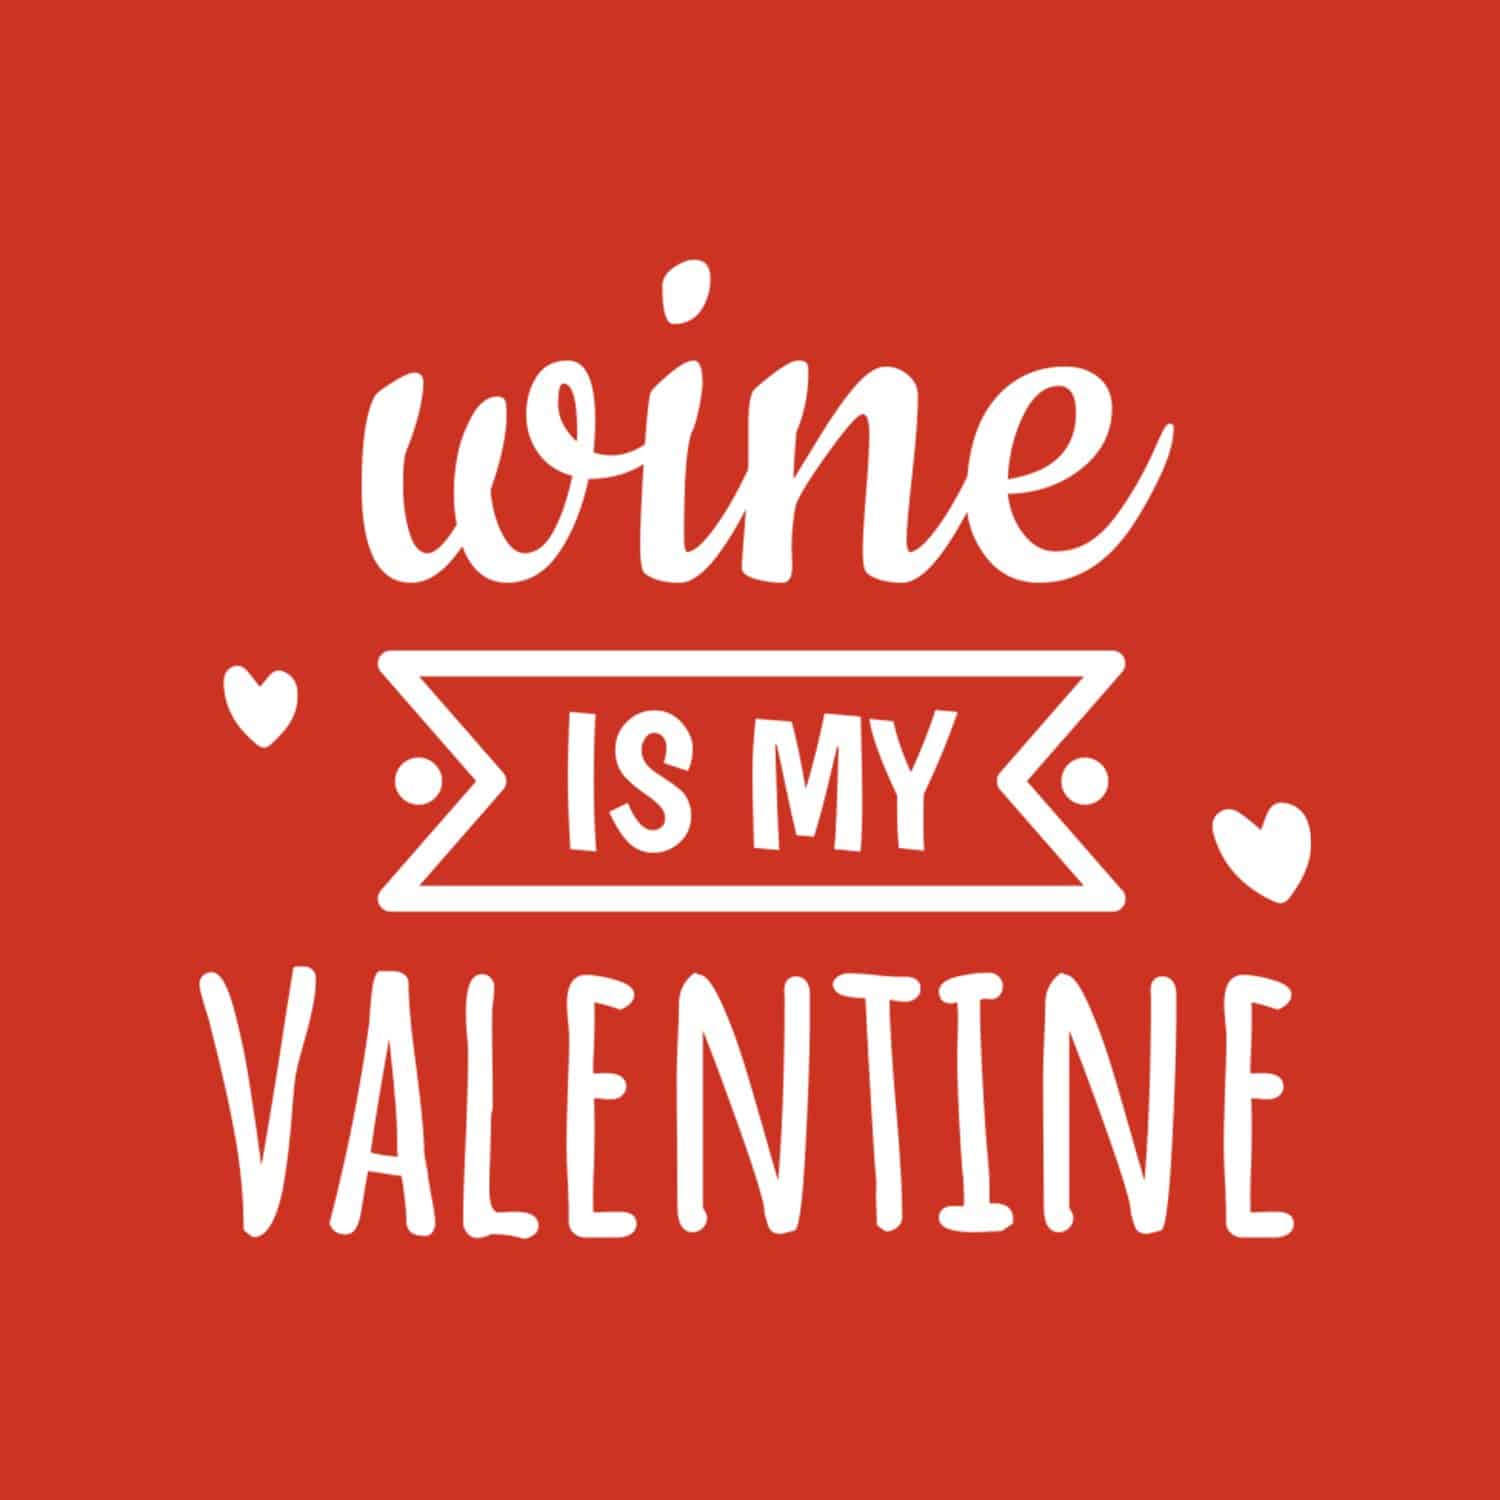 Weinglas - Wine is my Valentine